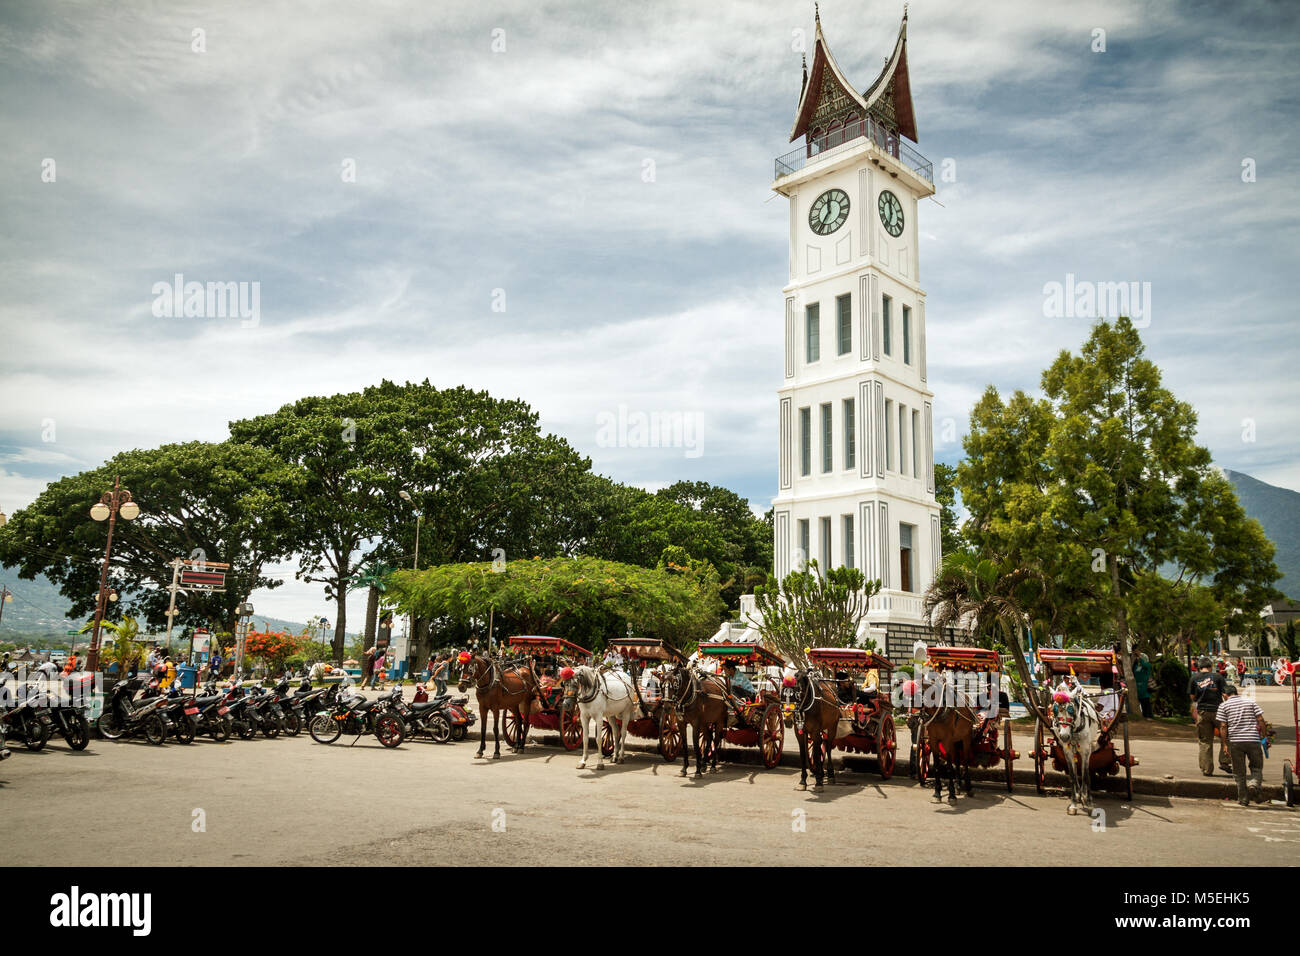 Berühmte Uhrturm in Bukittinggi, Jam Gadang in West Sumatra, Indonesien. Kutschen und erwarten unten in diesem beeindruckenden touristische Attraktion Stockfoto